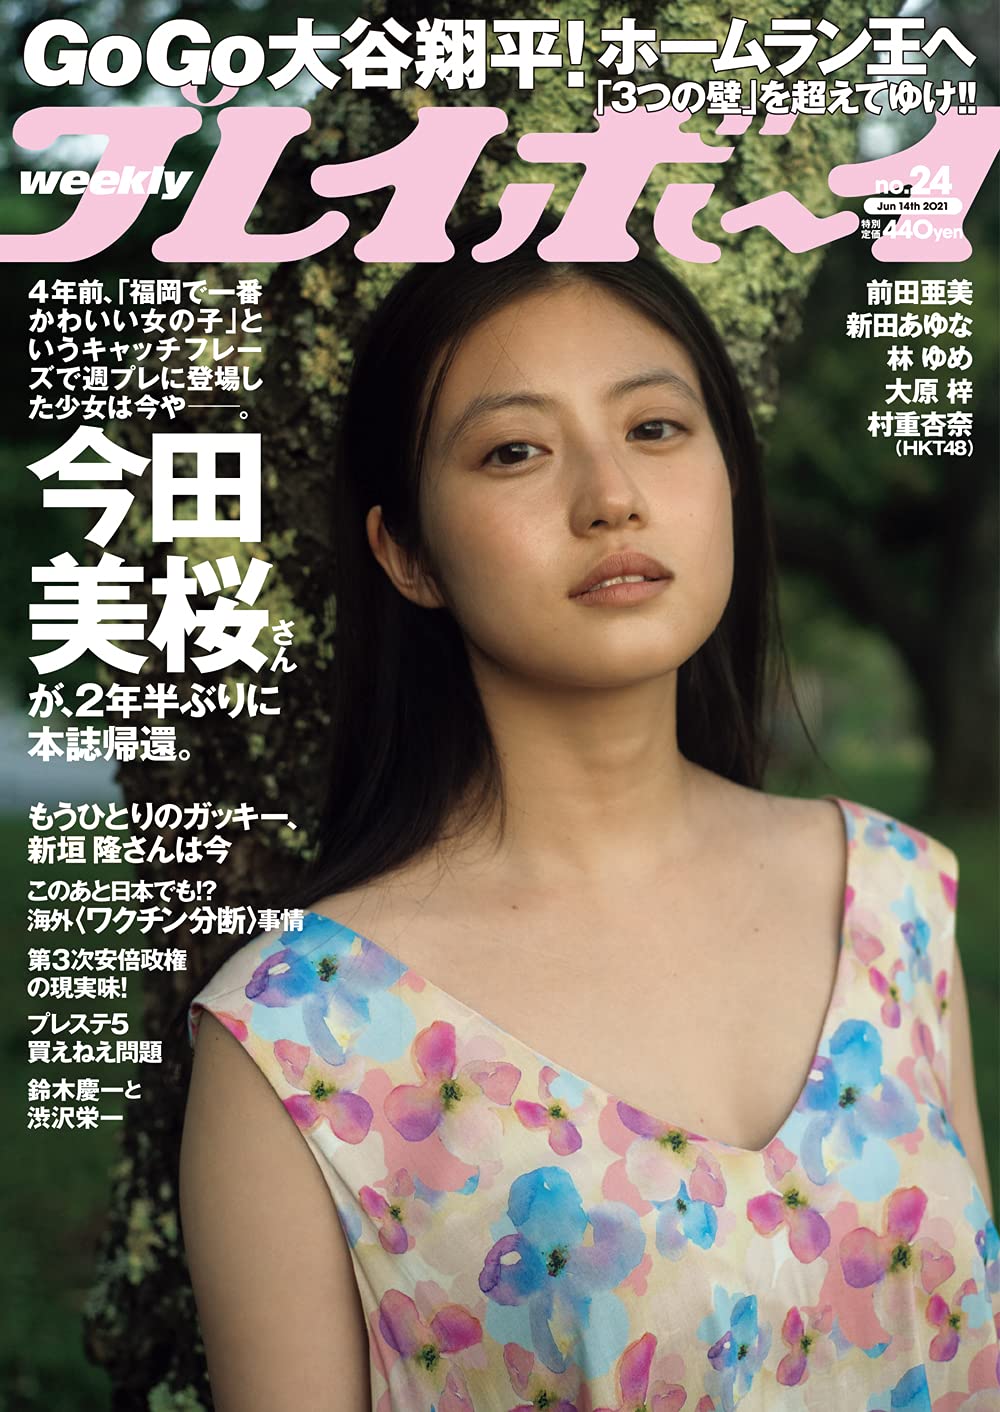  週刊プレイボーイ 2021年6月14日号 (No.24) 雑誌